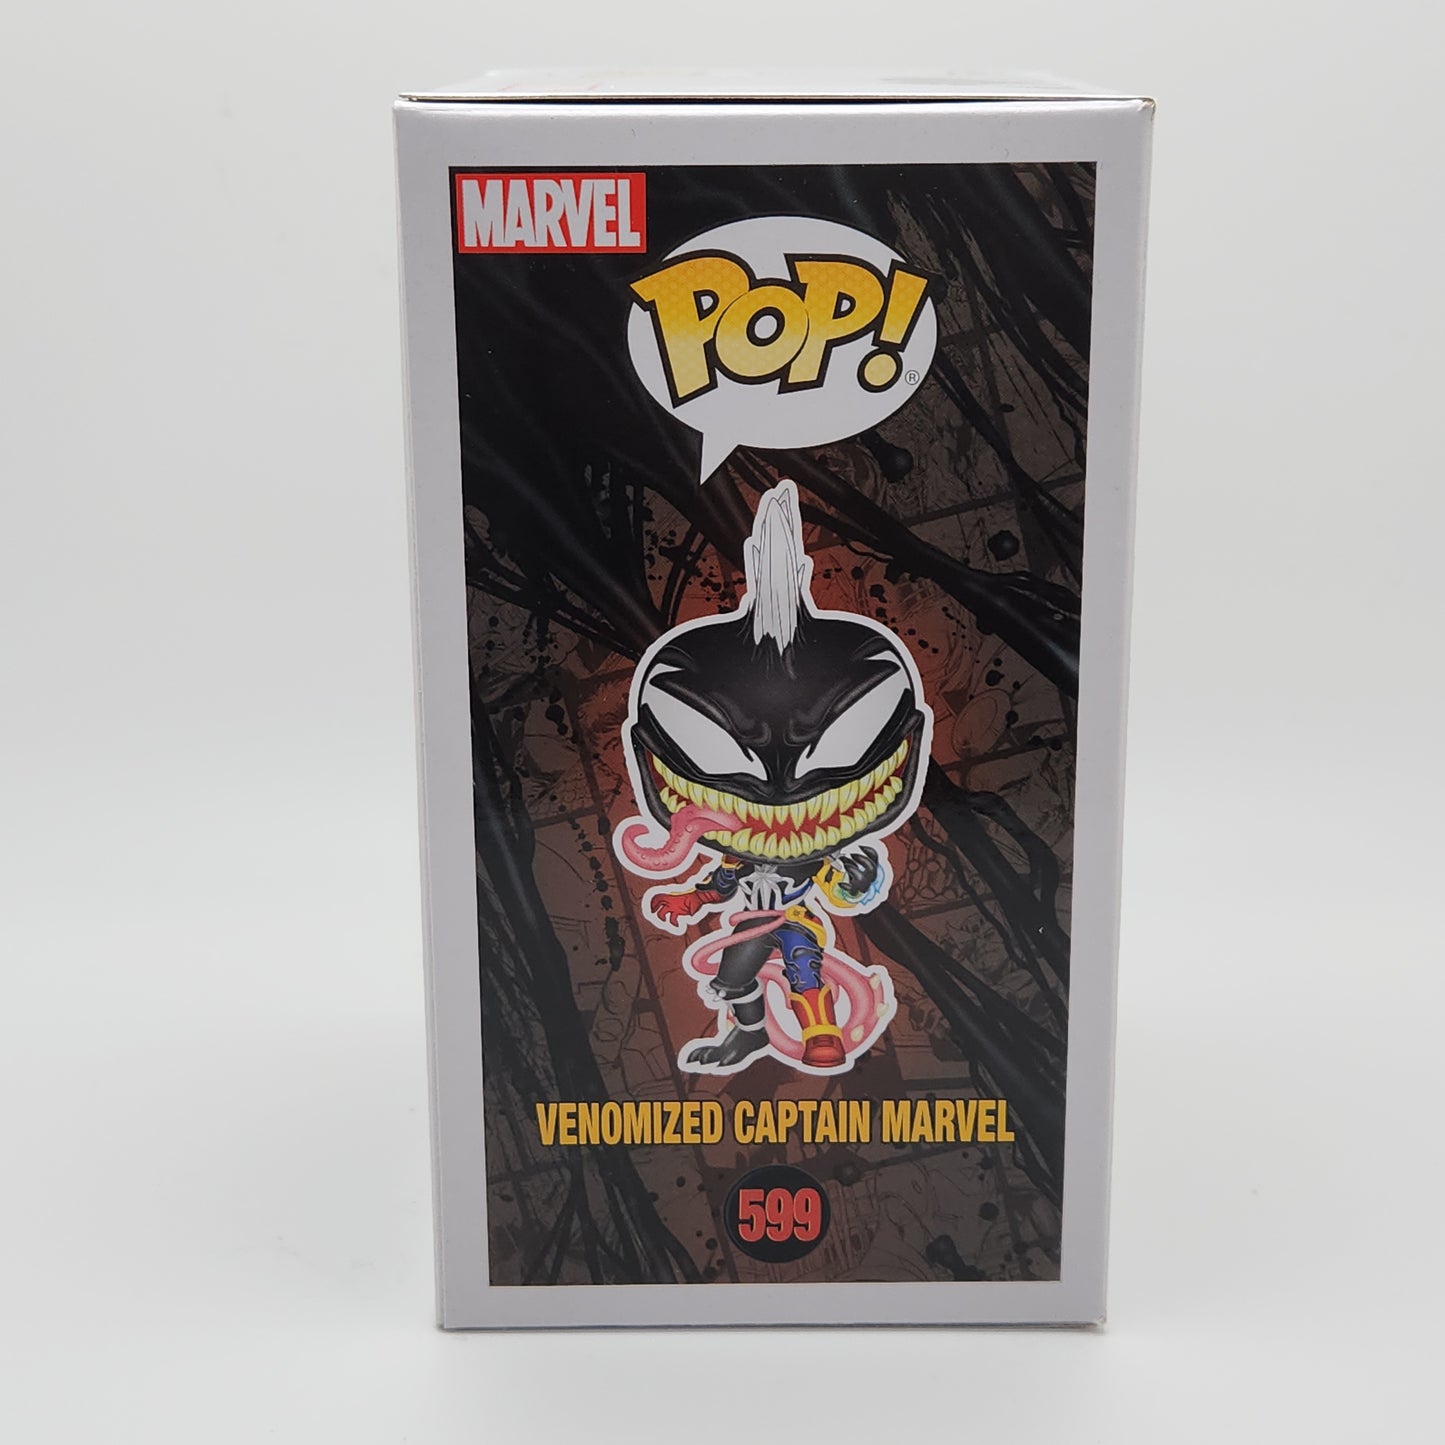 Funko Pop! Marvel- Spider-Man Maximum Venom: Venomized Captain Marvel